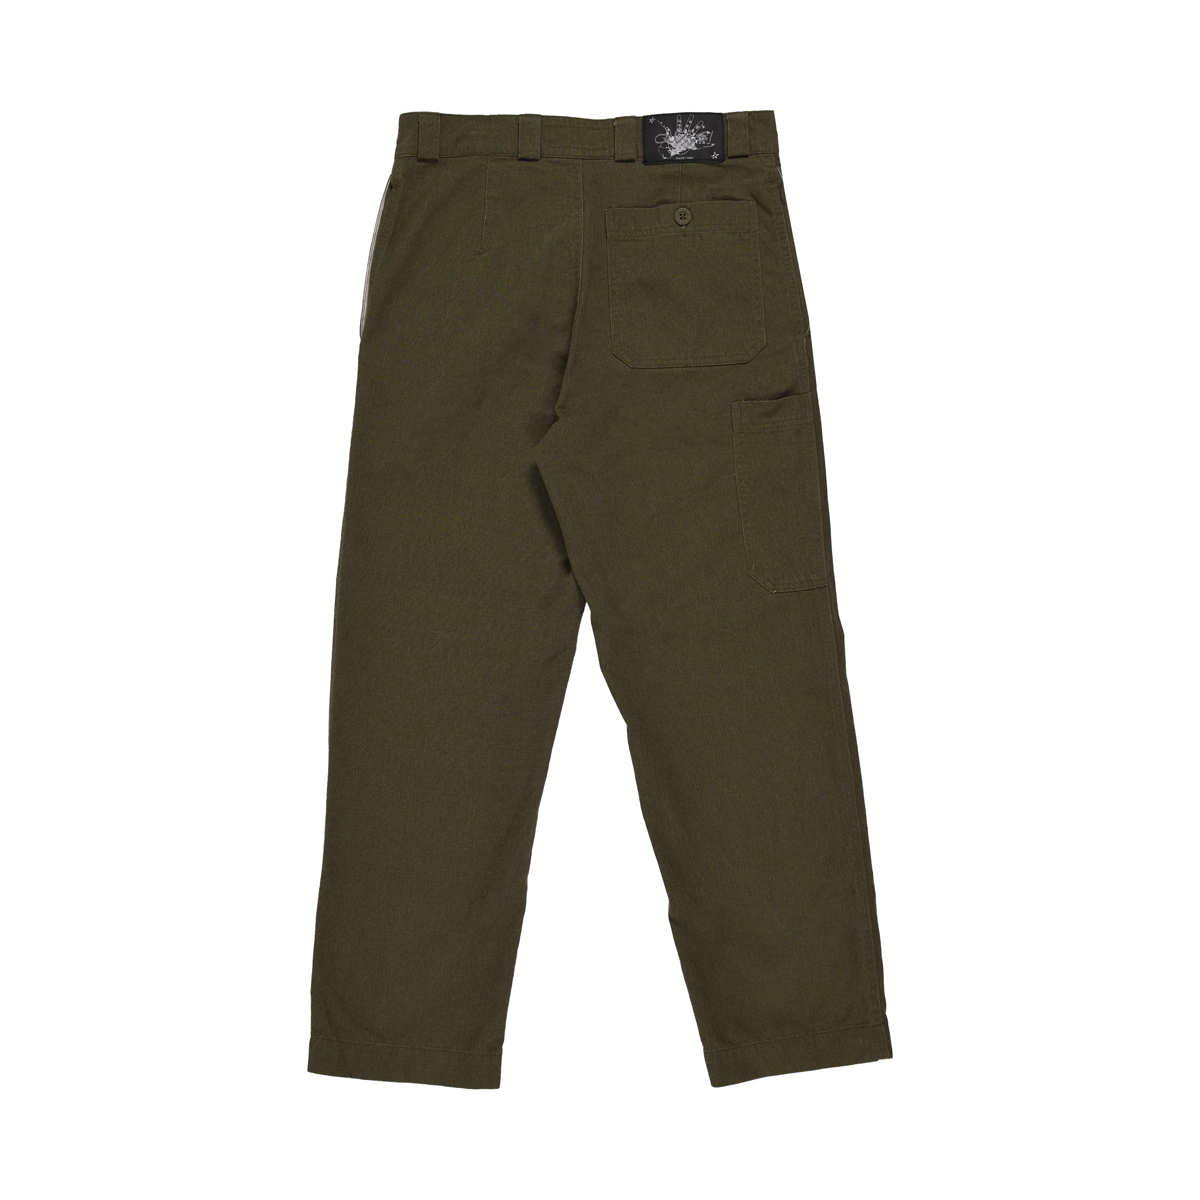 Quasi Pocket Pants - Army